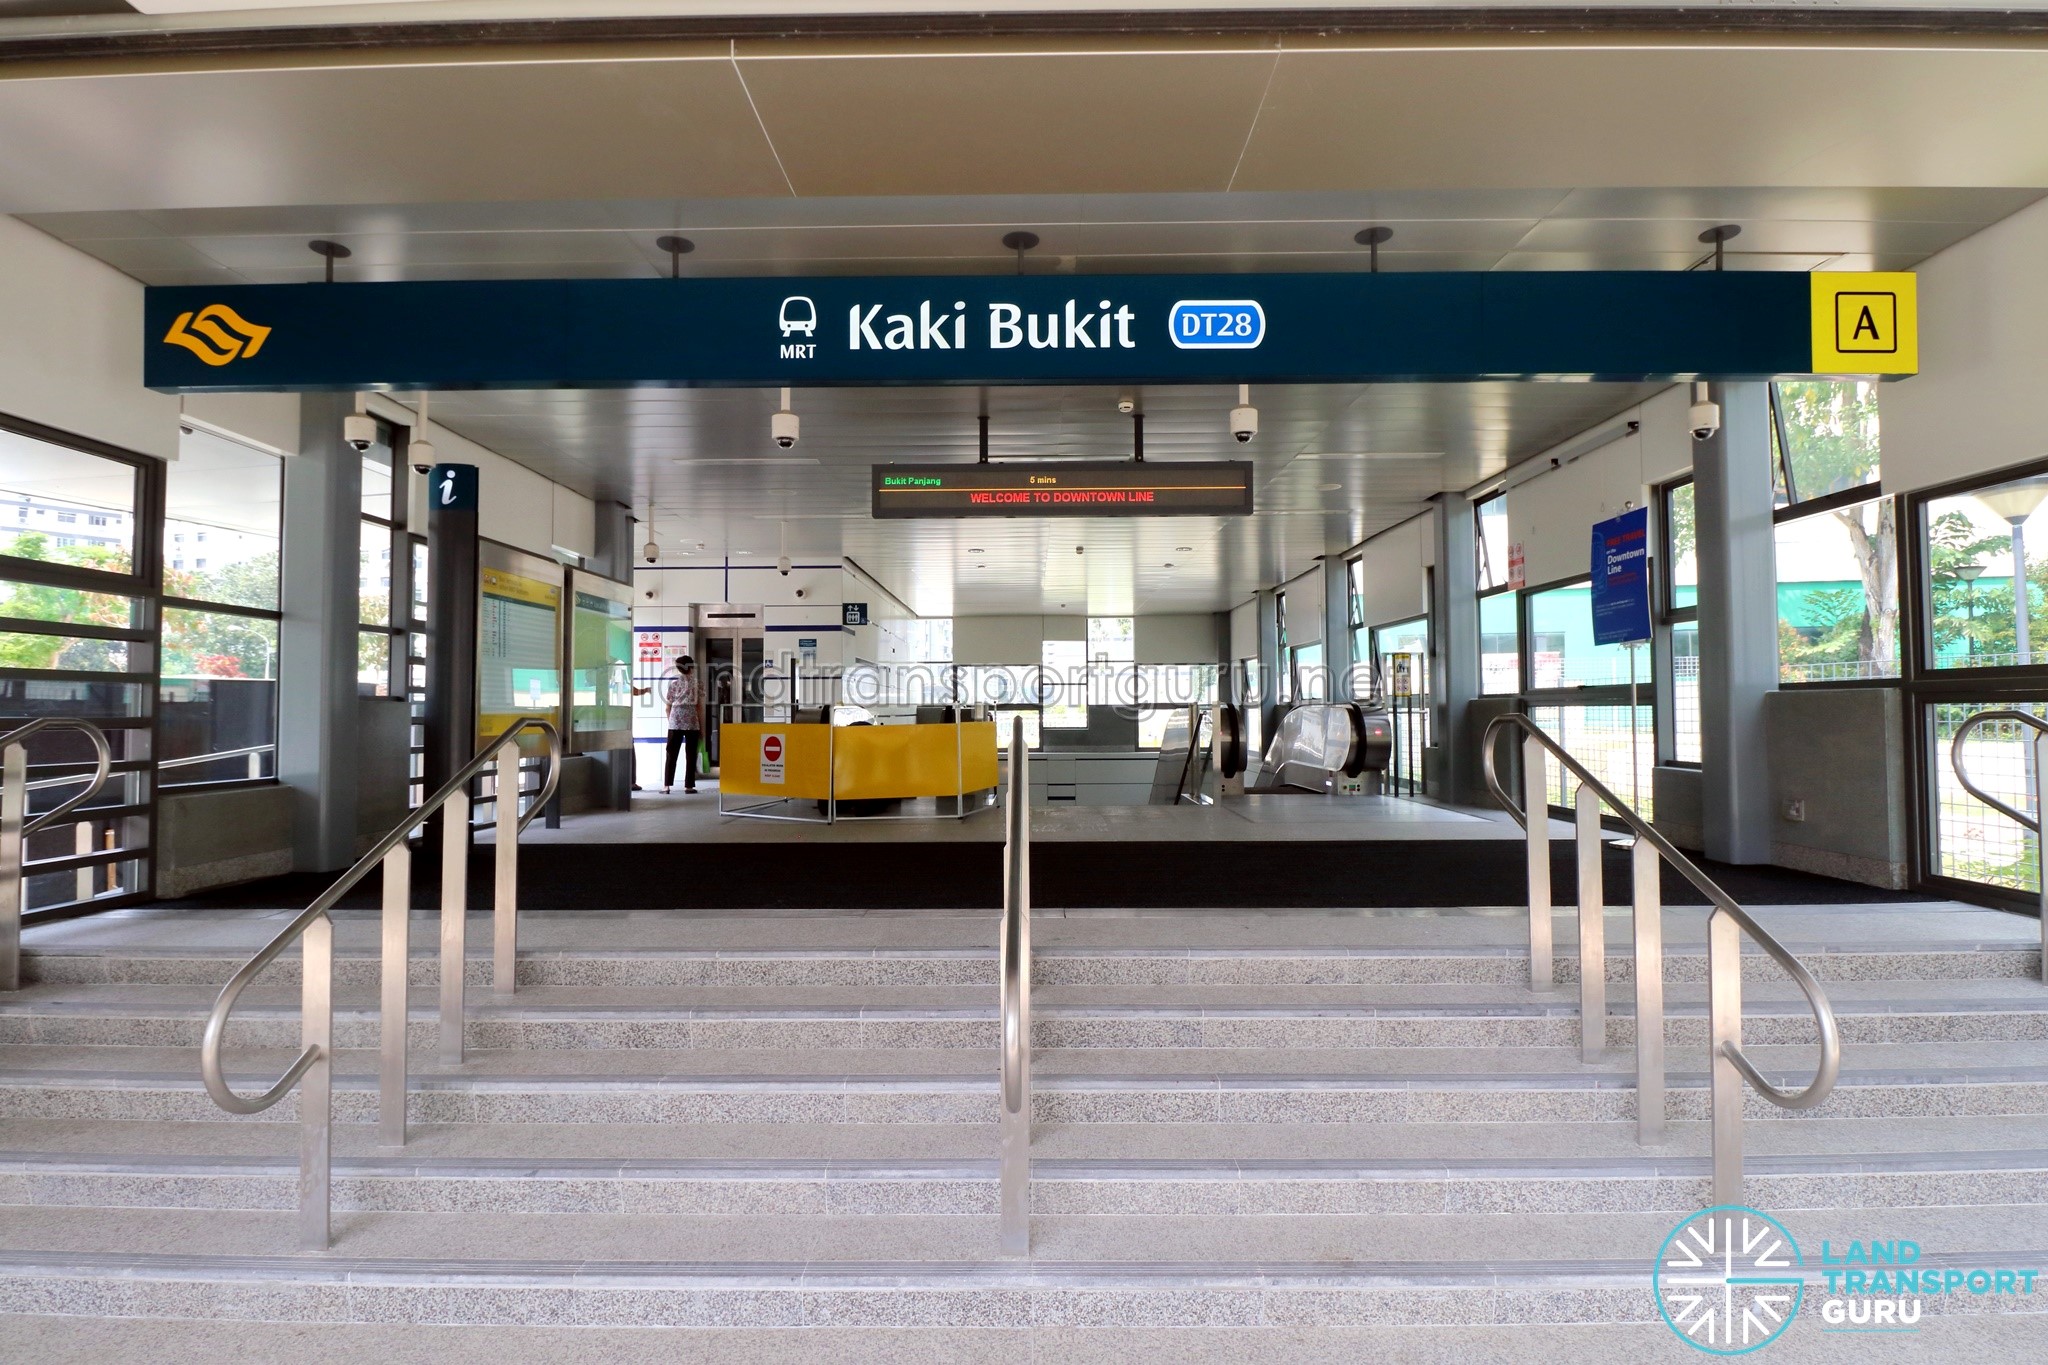 Kaki Bukit Exit A